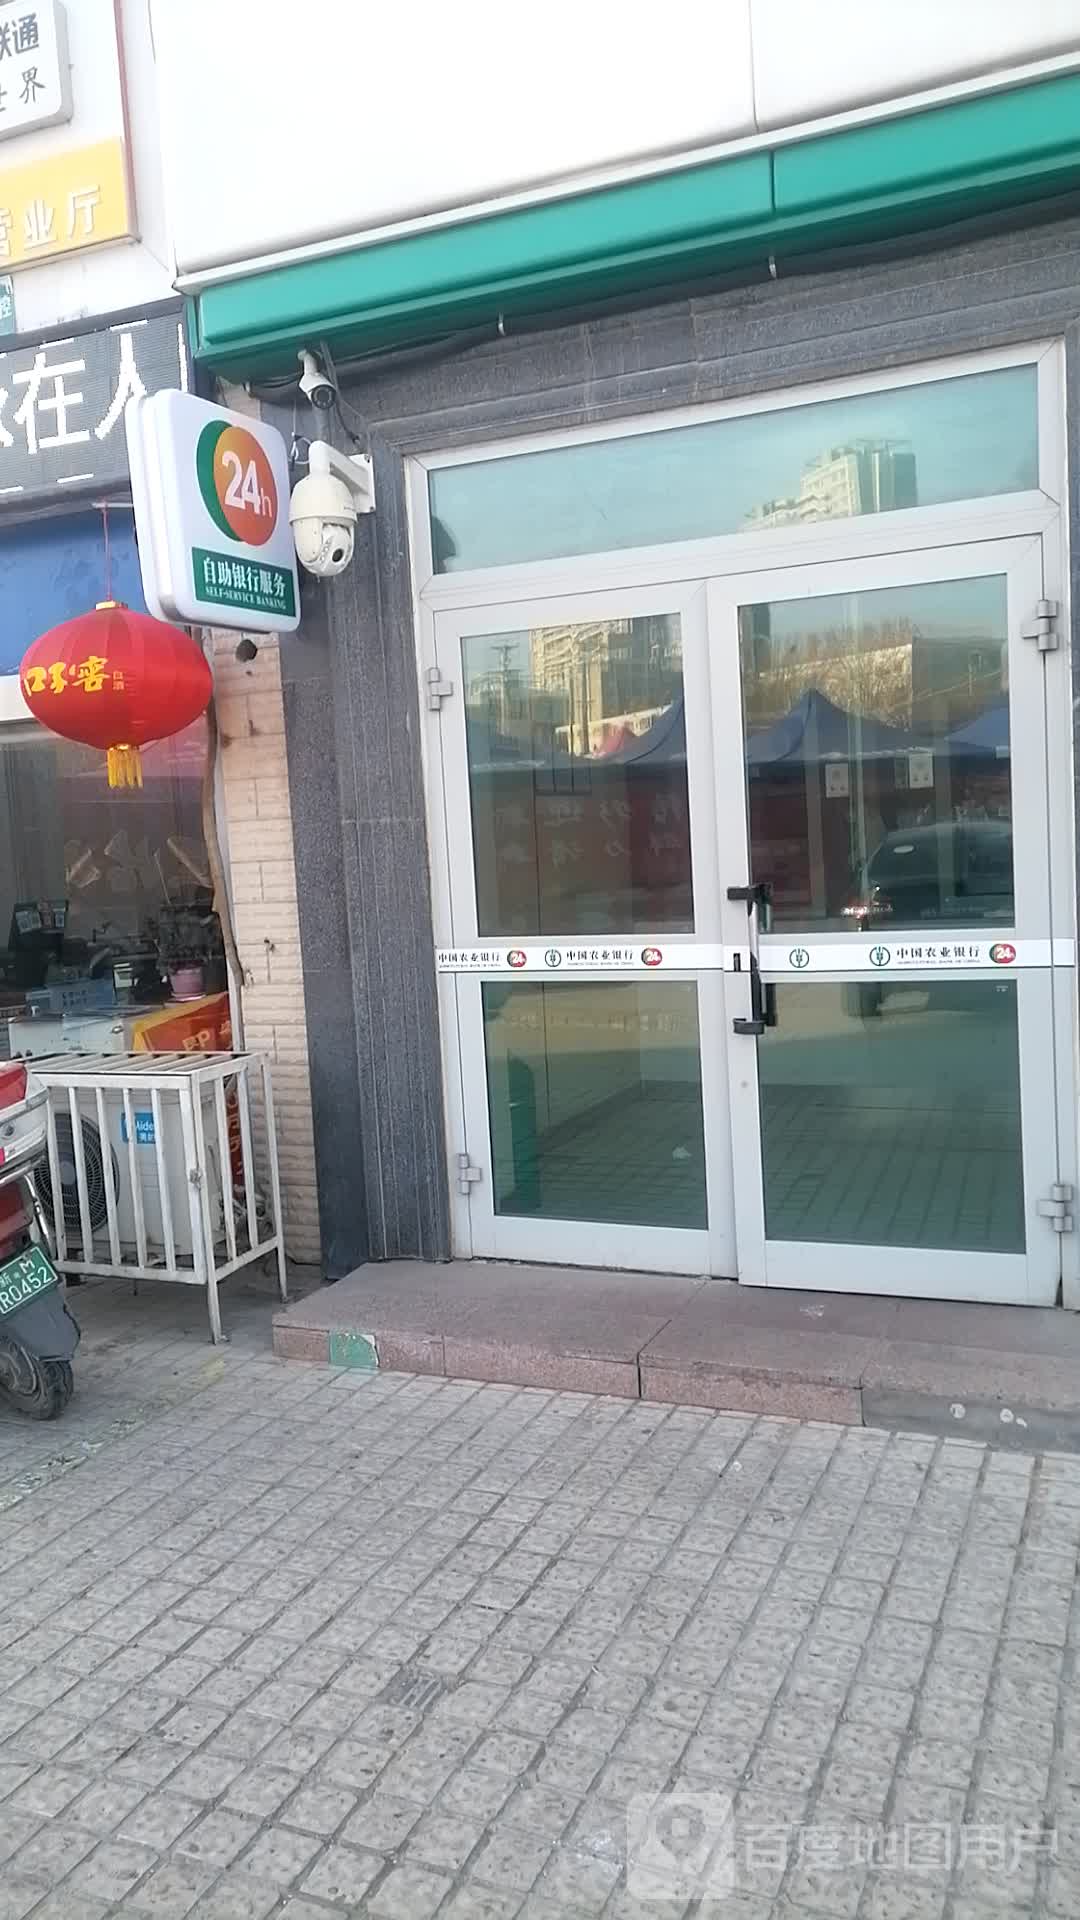 中古农业银行ATM(新华路)